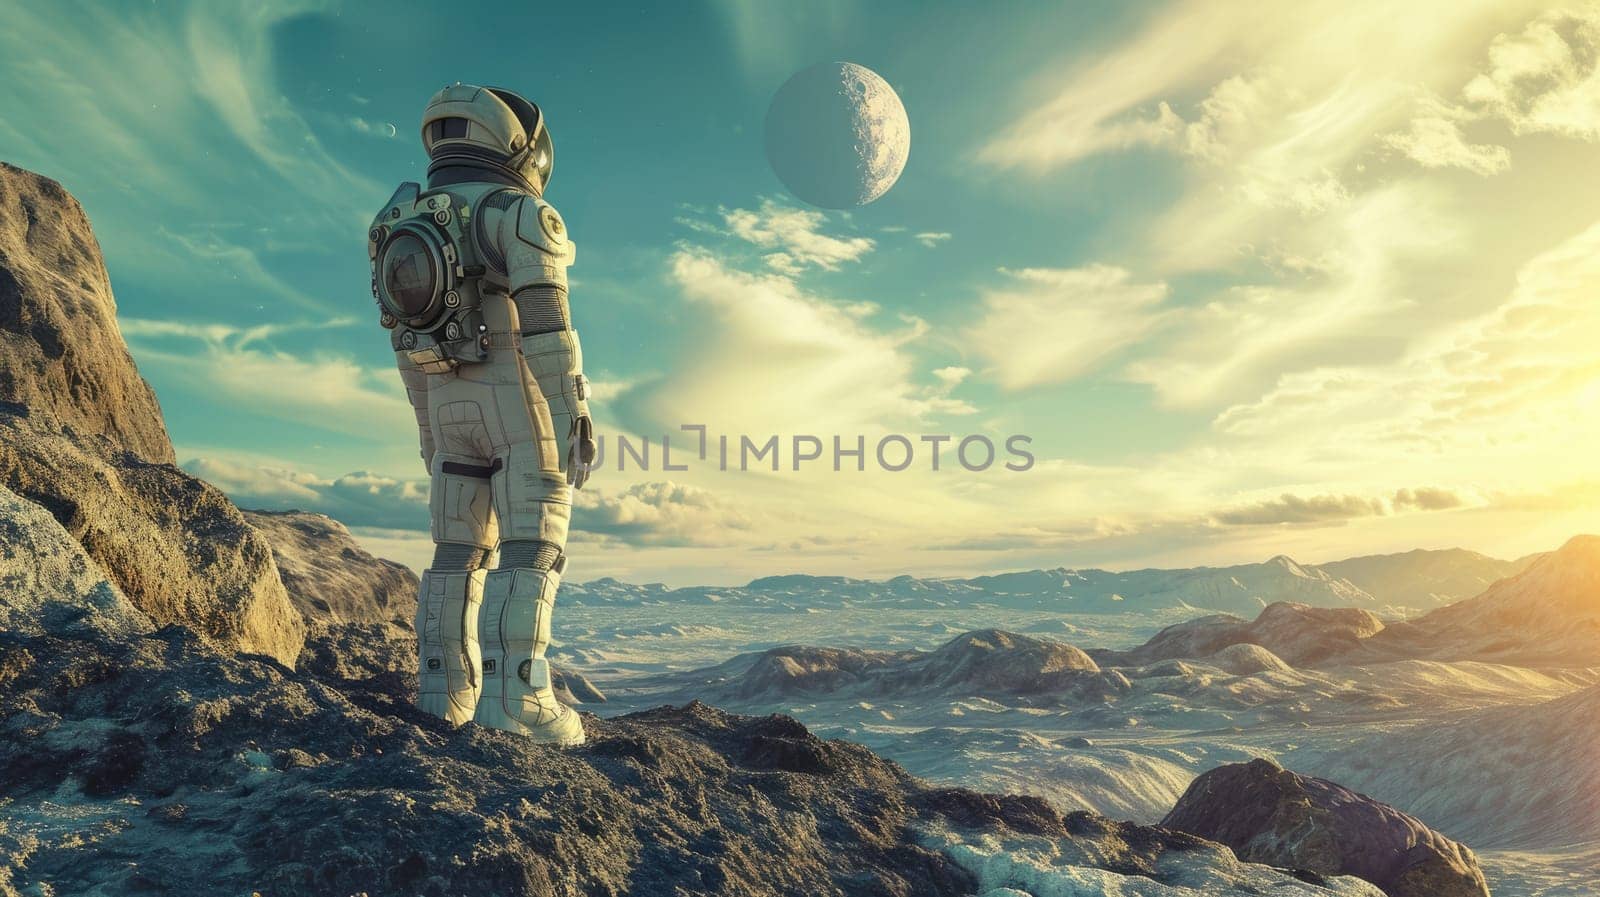 An astronaut in a space suit exploring a distant planet's surface, futuristic space exploration concept, alien landscape. Resplendent.